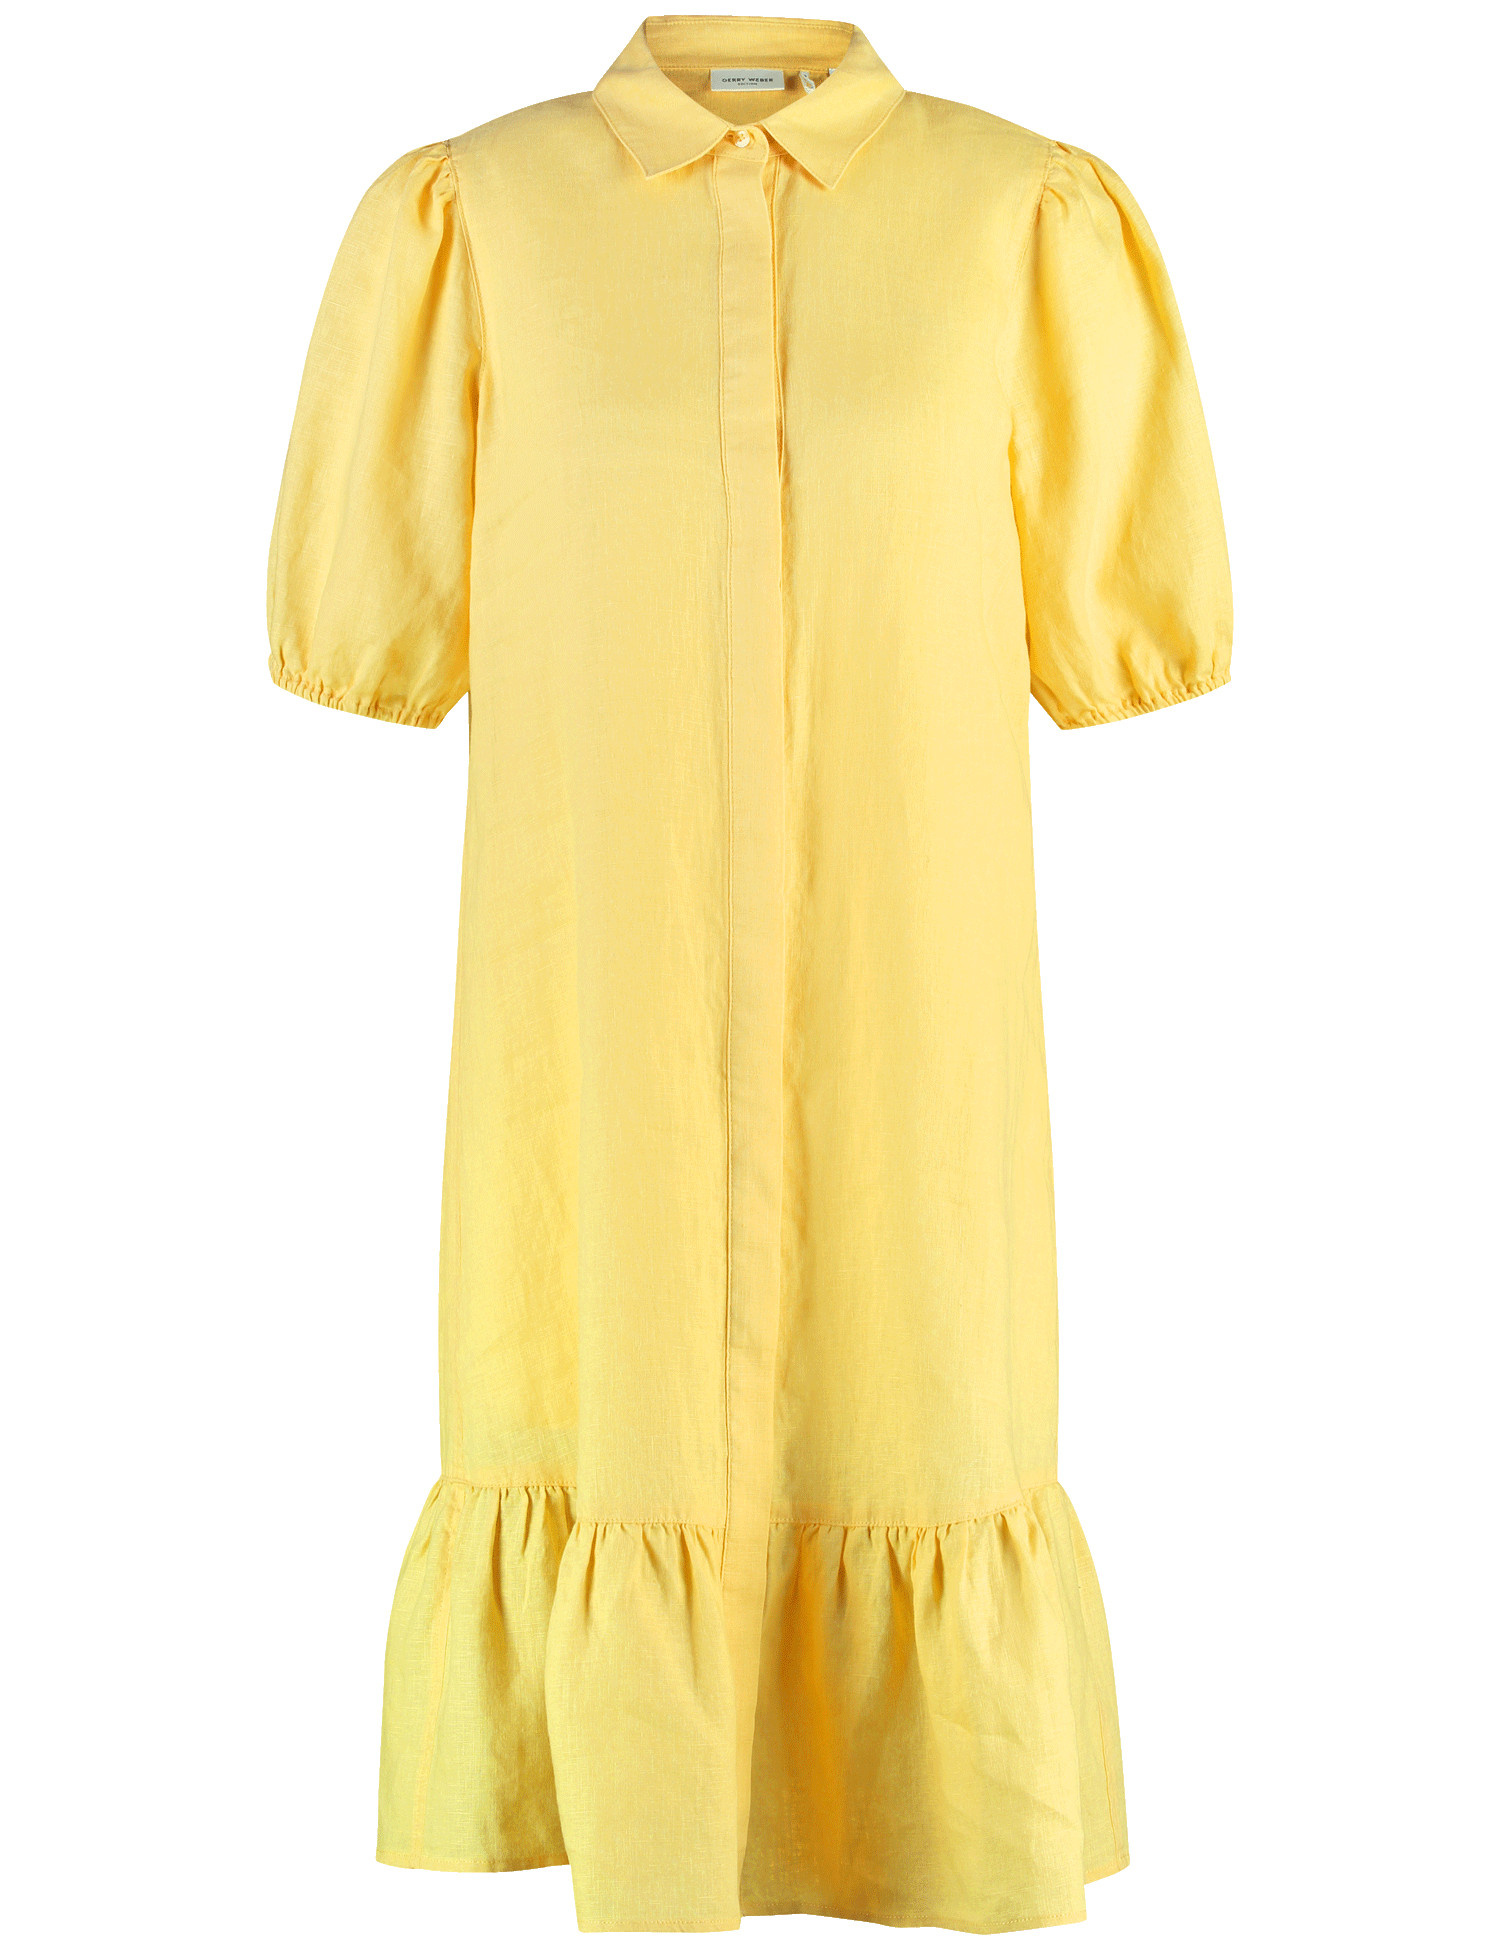 GERRY WEBER Damen Modisches Blusenkleid aus Leinen Halber Arm Hemdkragen Gelb, 48 von Gerry Weber